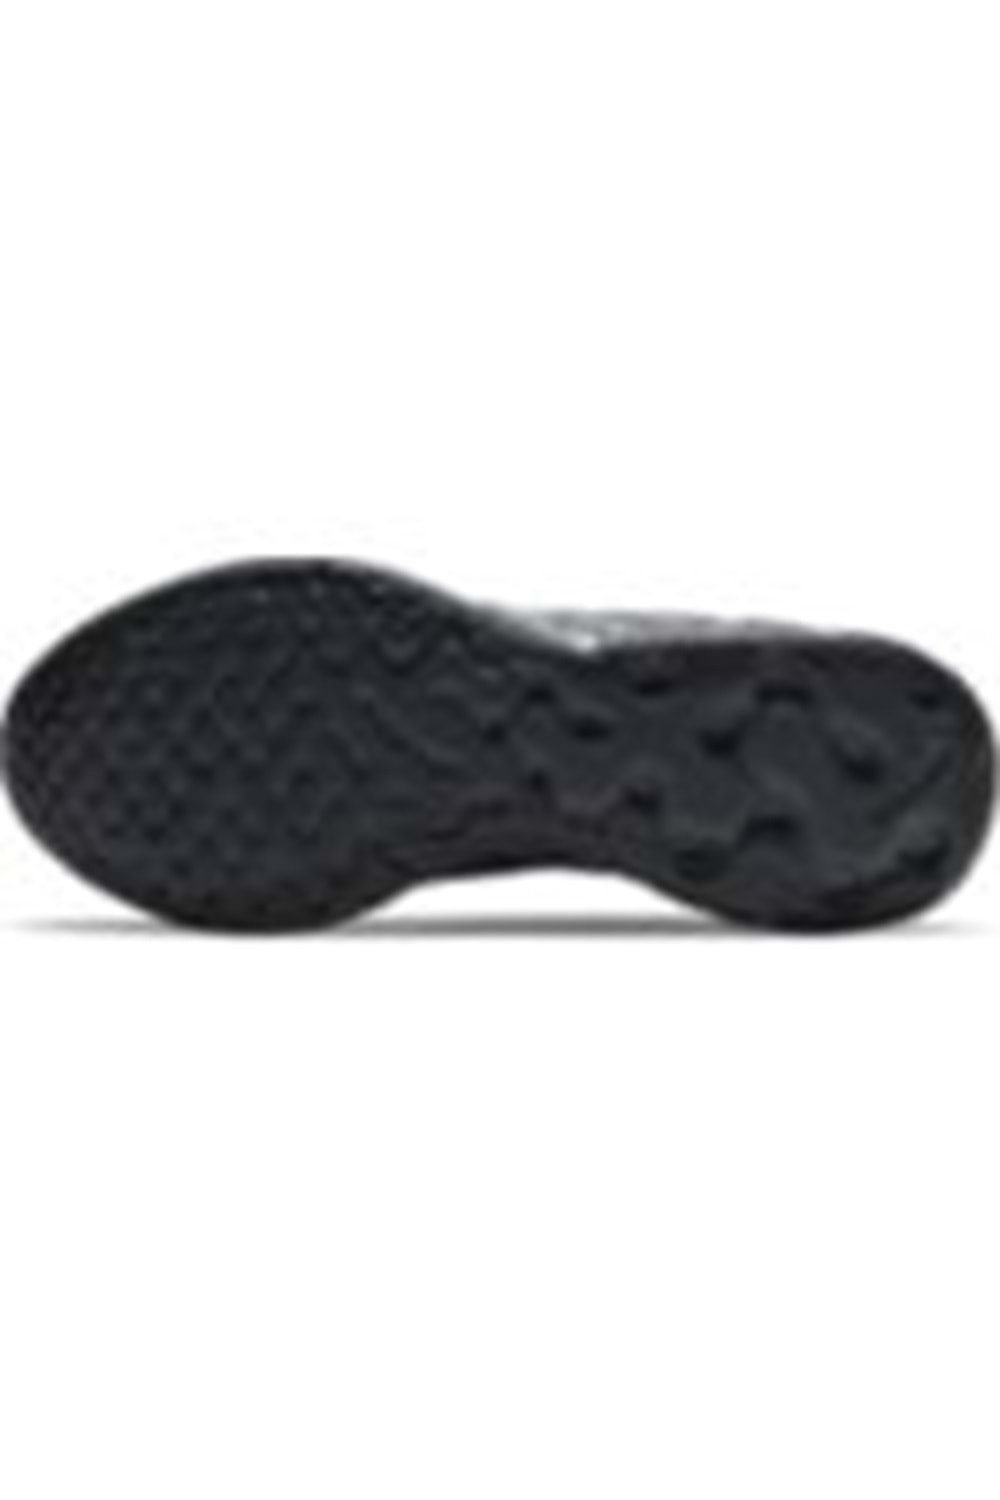 Nike Renew Ride 2 Erkek Koşu&Yürüyüş Ayakkabısı CU3507-002